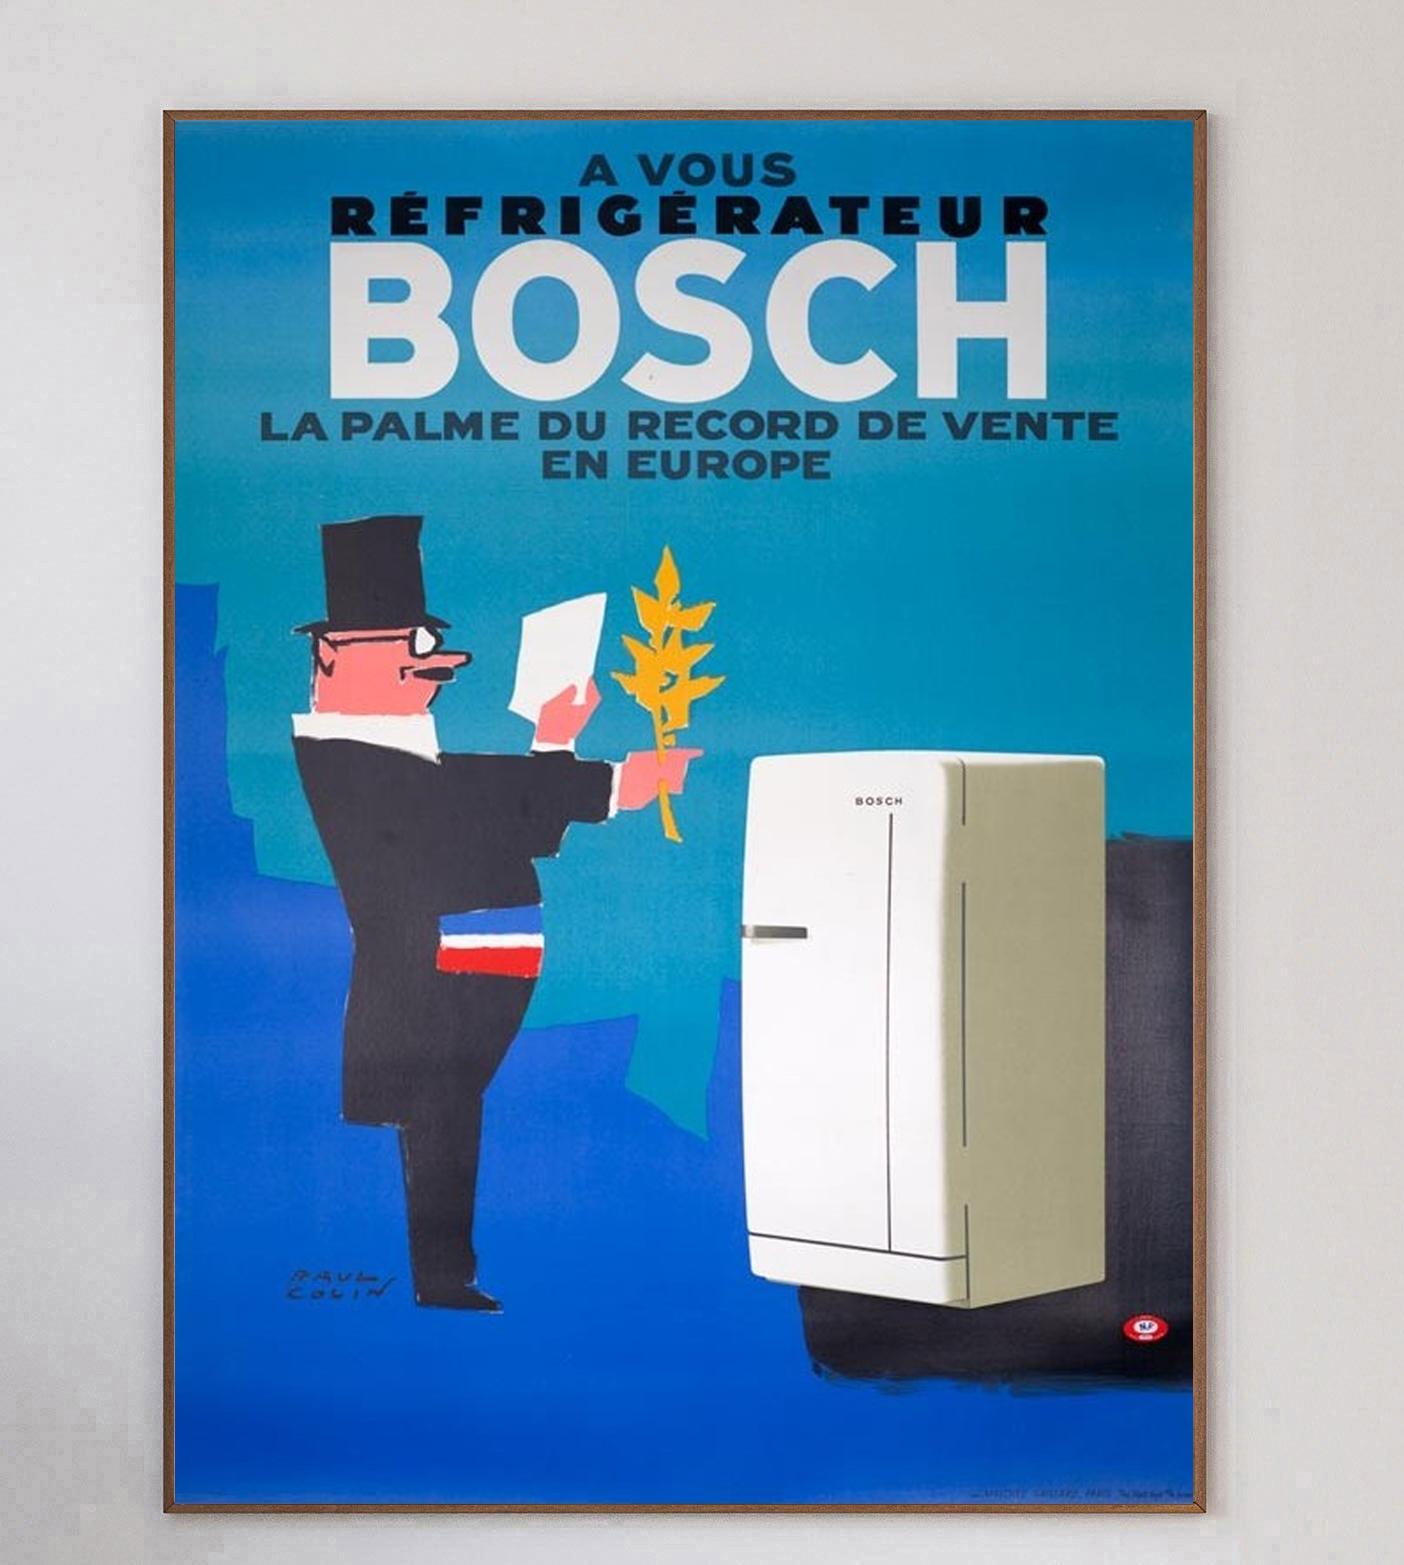 Wunderschönes Art-Déco-Plakat von 1963 für die deutsche Elektronikmarke Bosch. Das Plakat wirbt für die neue Kühlschrankserie des Unternehmens mit der Aufschrift 